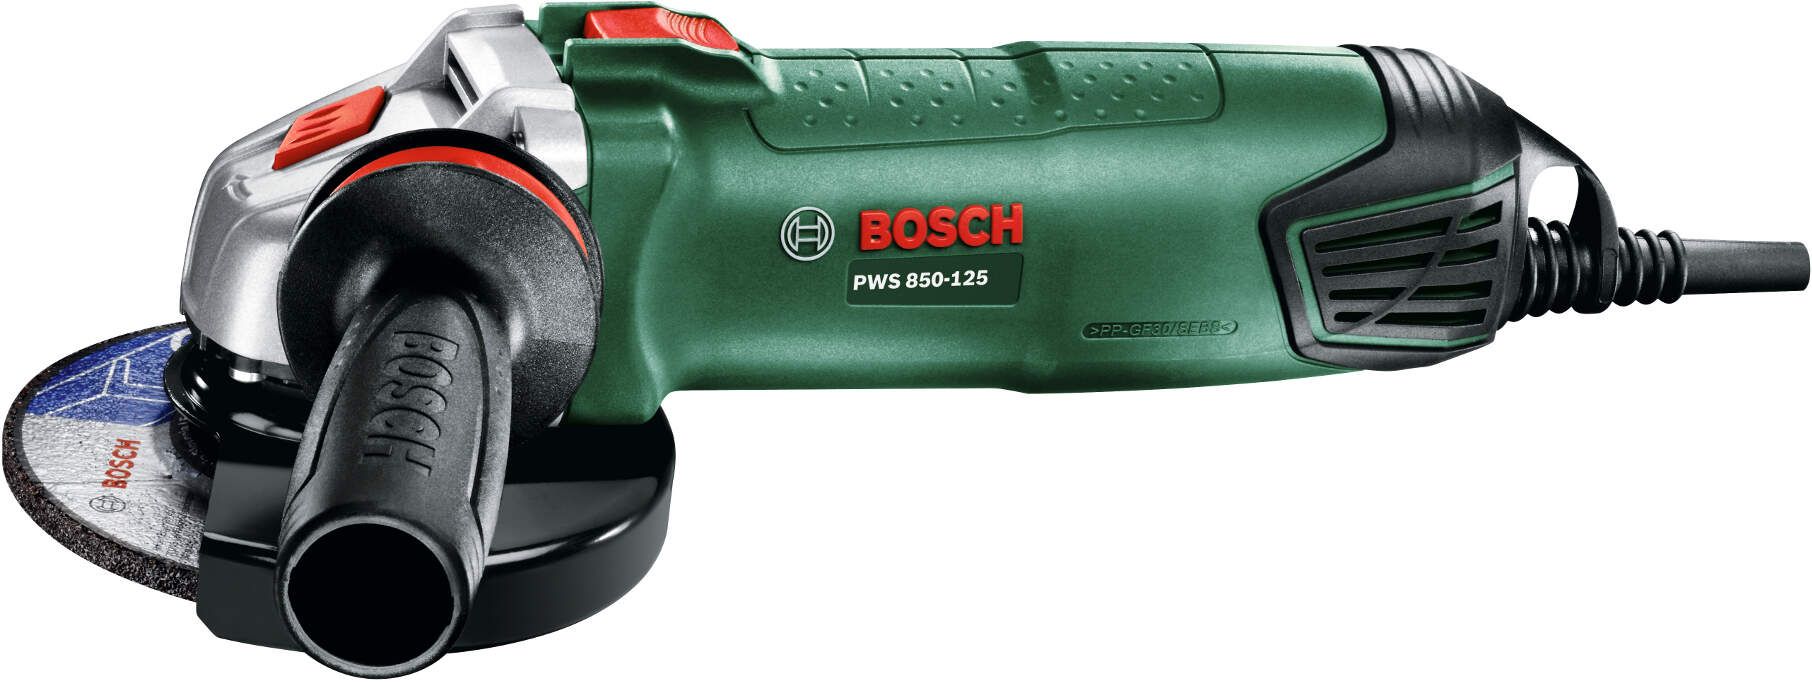 Bosch PWS 850-125 mala ugaona brusilica, 850W, 125mm (06033A270B0)